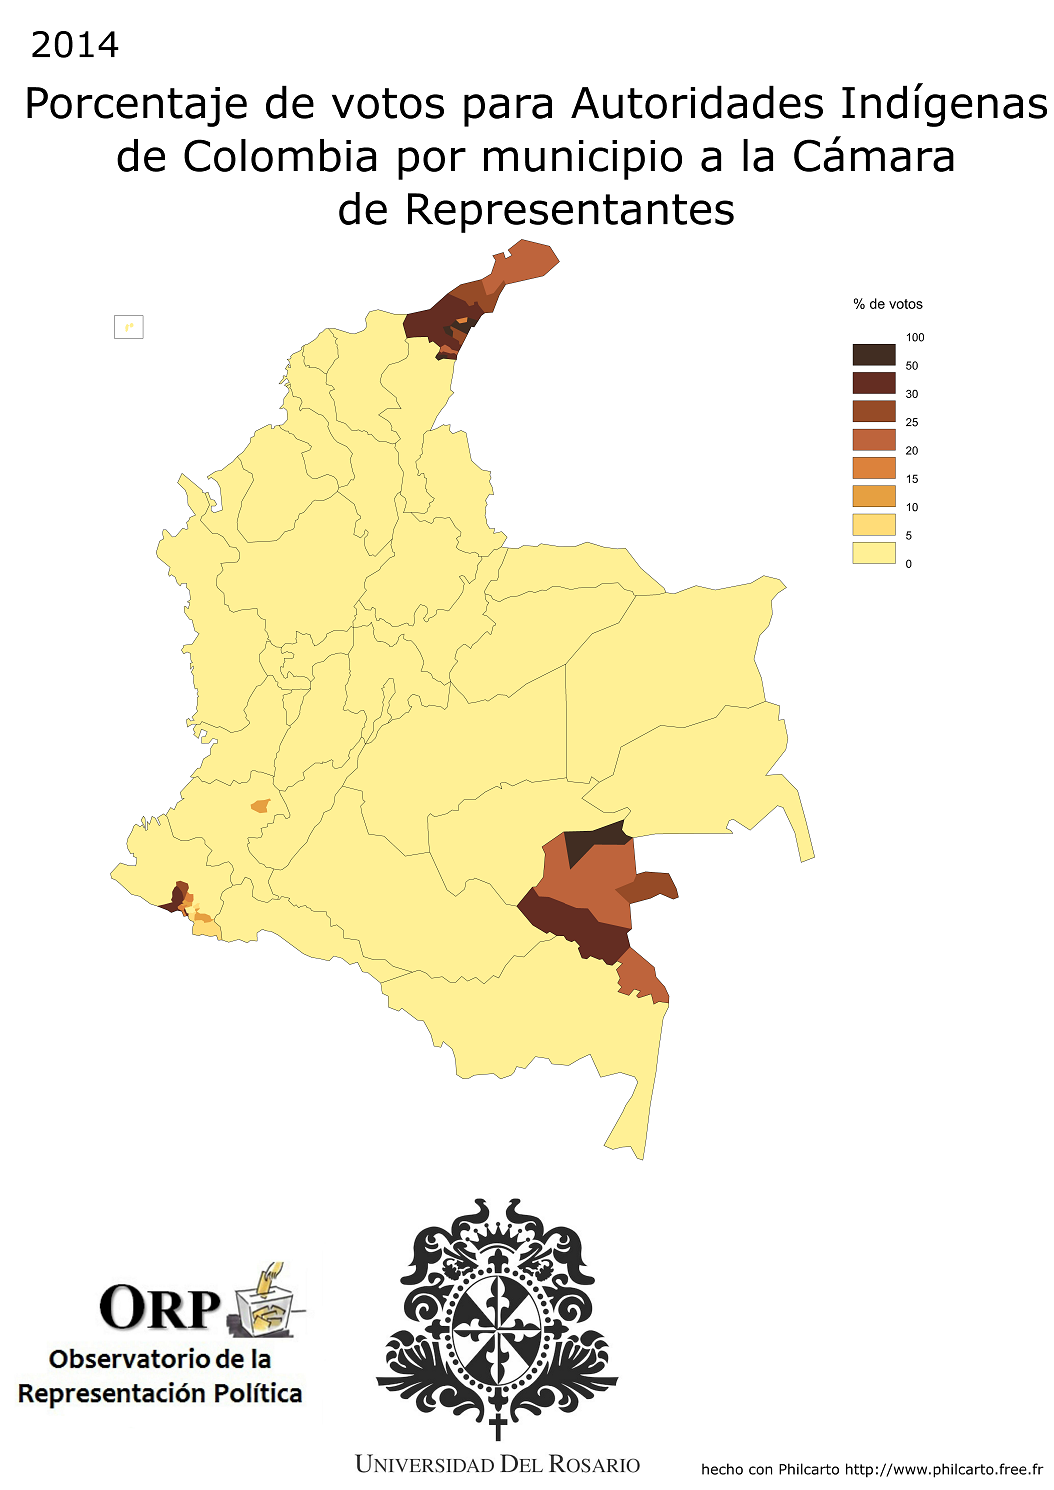 Autoridades Indígenas de Colombia "AICO" votos